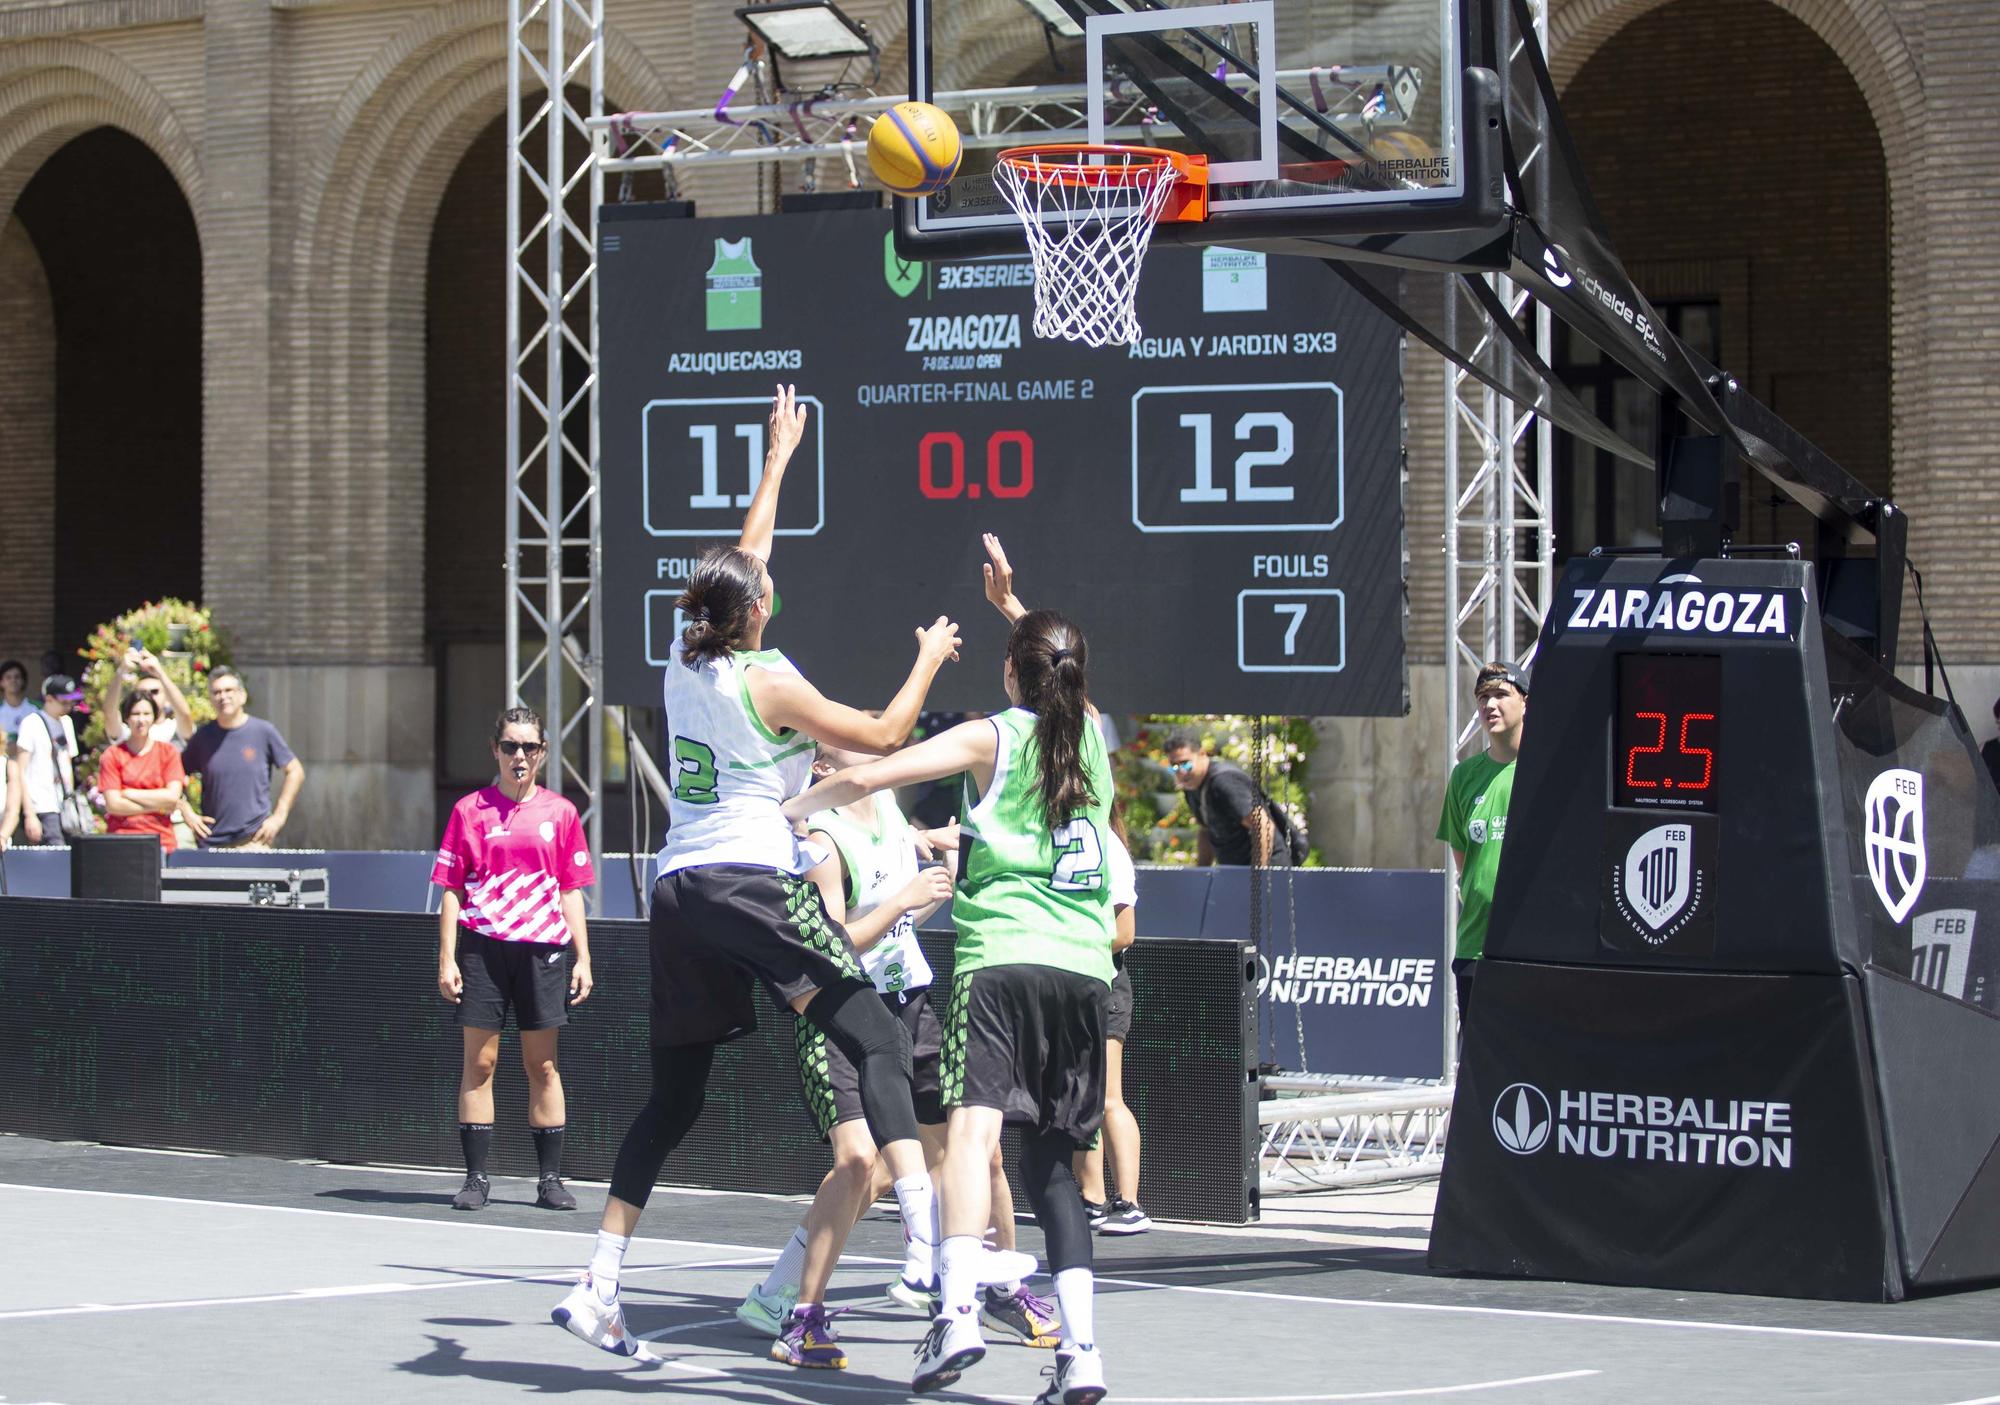 Las Herbalife 3x3 Series llenan de baloncesto la Plaza del Pilar de Zaragoza